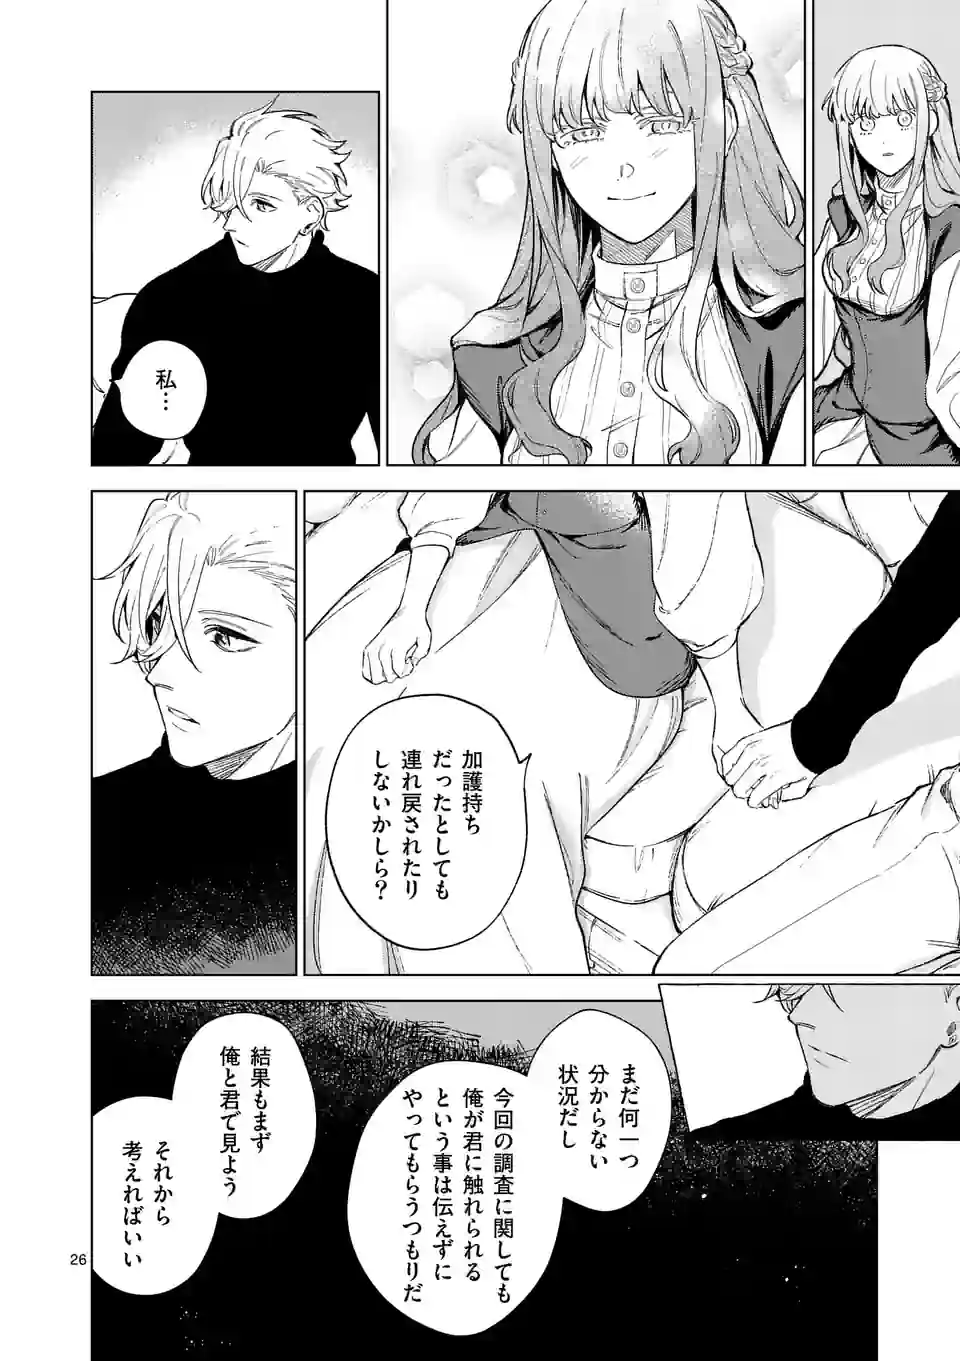 Mou Kyoumi ga Nai to Rikonsareta Reijou no Igai to Tanoshii Shinseikatsu - Chapter 9.2 - Page 14